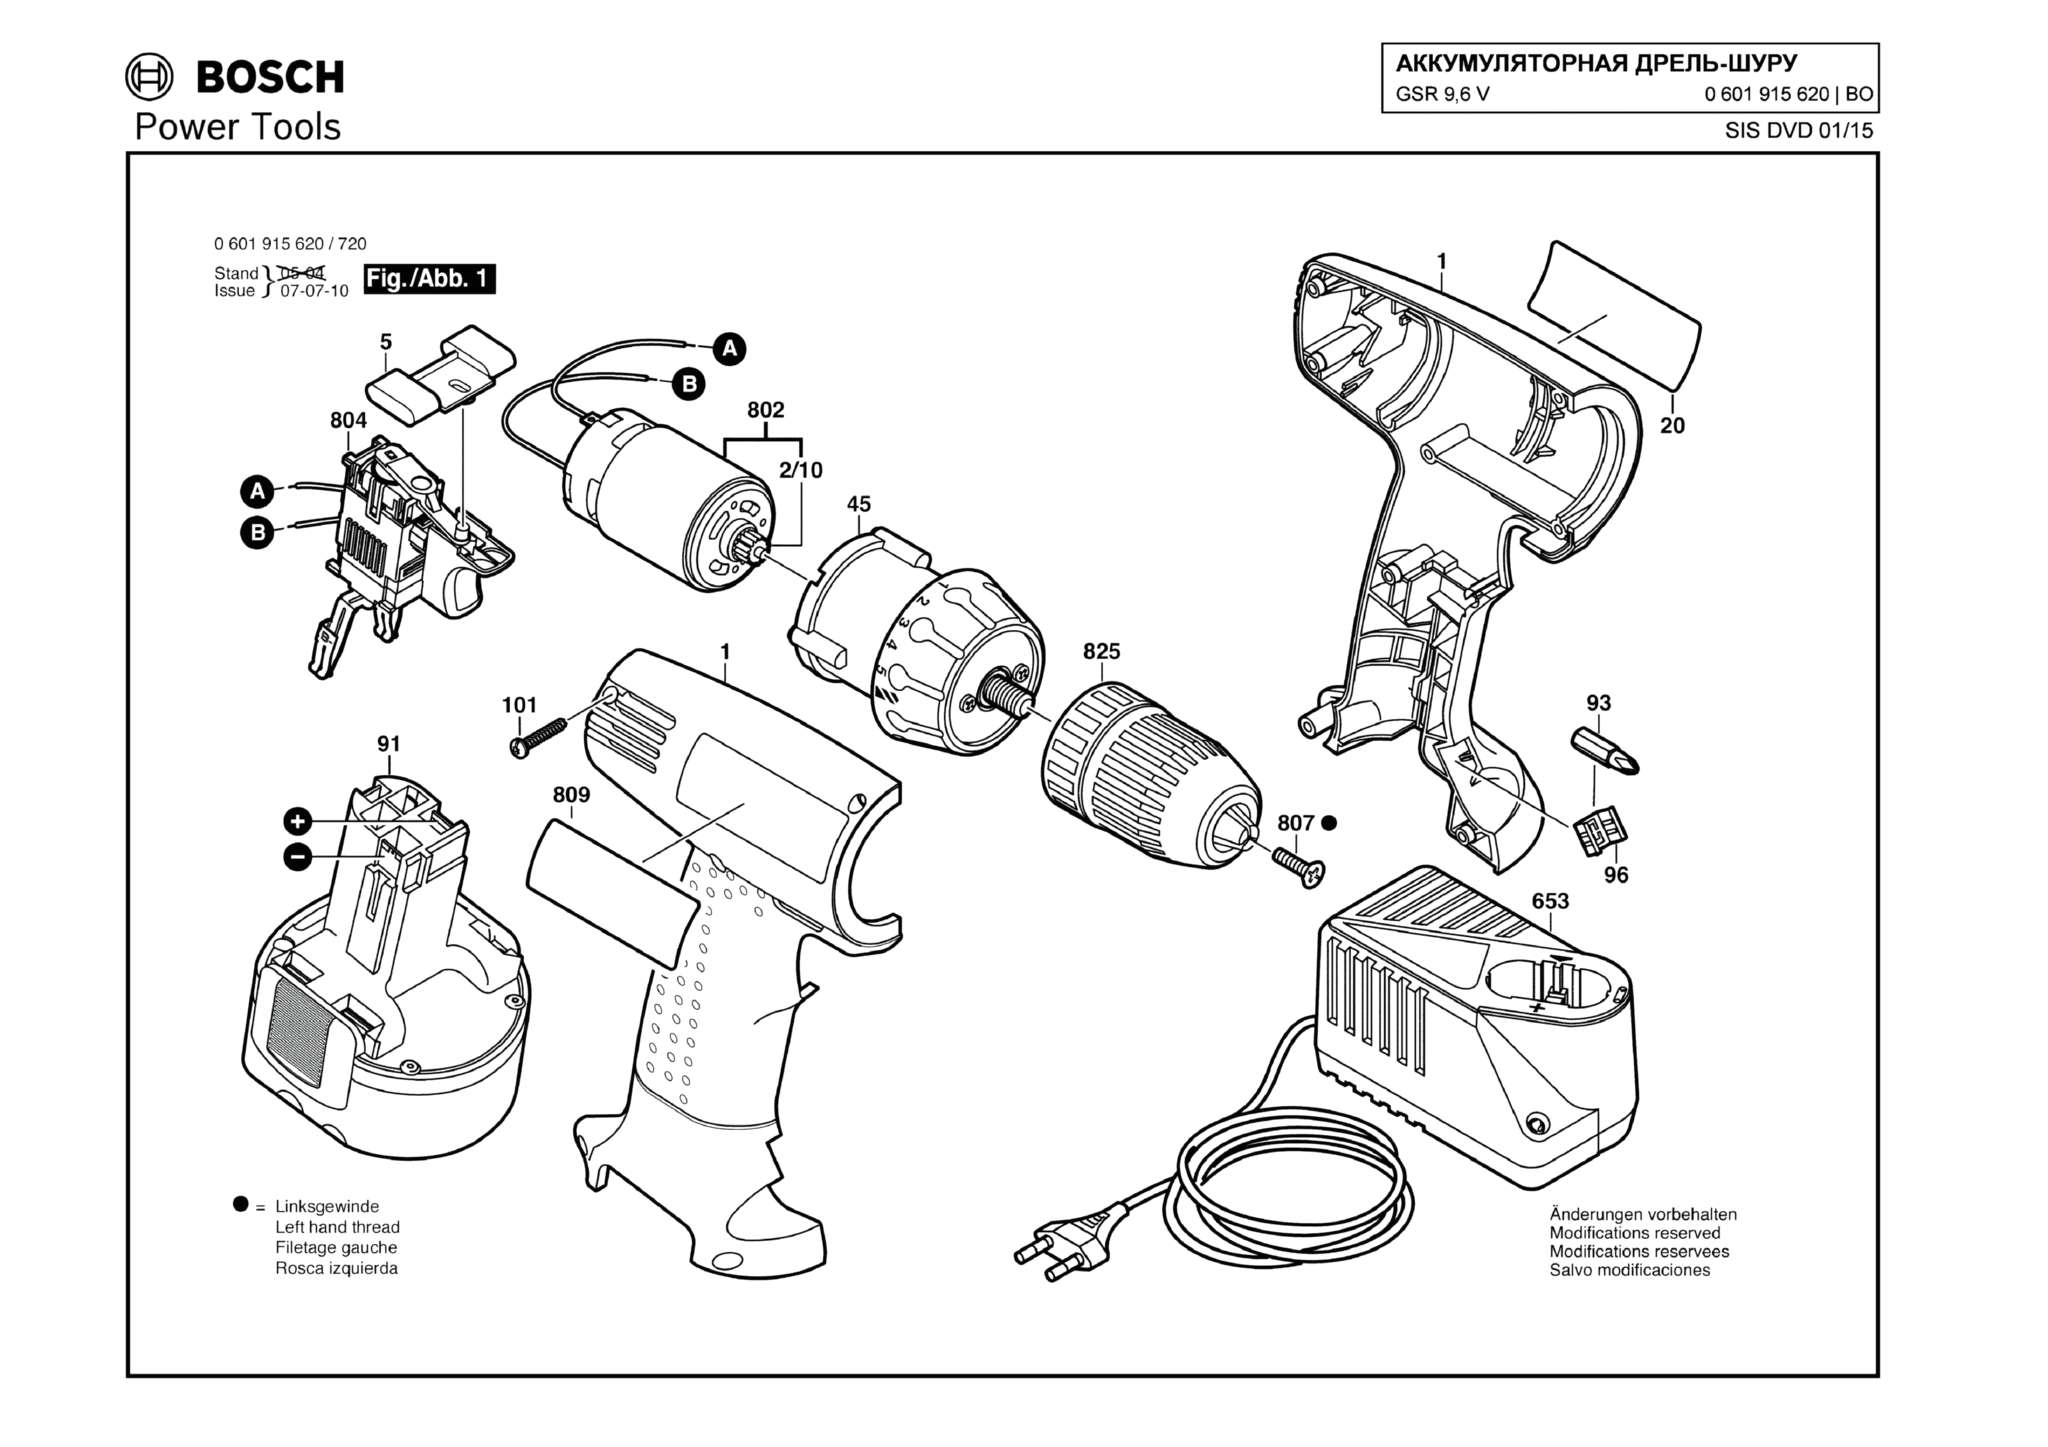 Запчасти, схема и деталировка Bosch GSR 9,6 V (ТИП 0601915620)